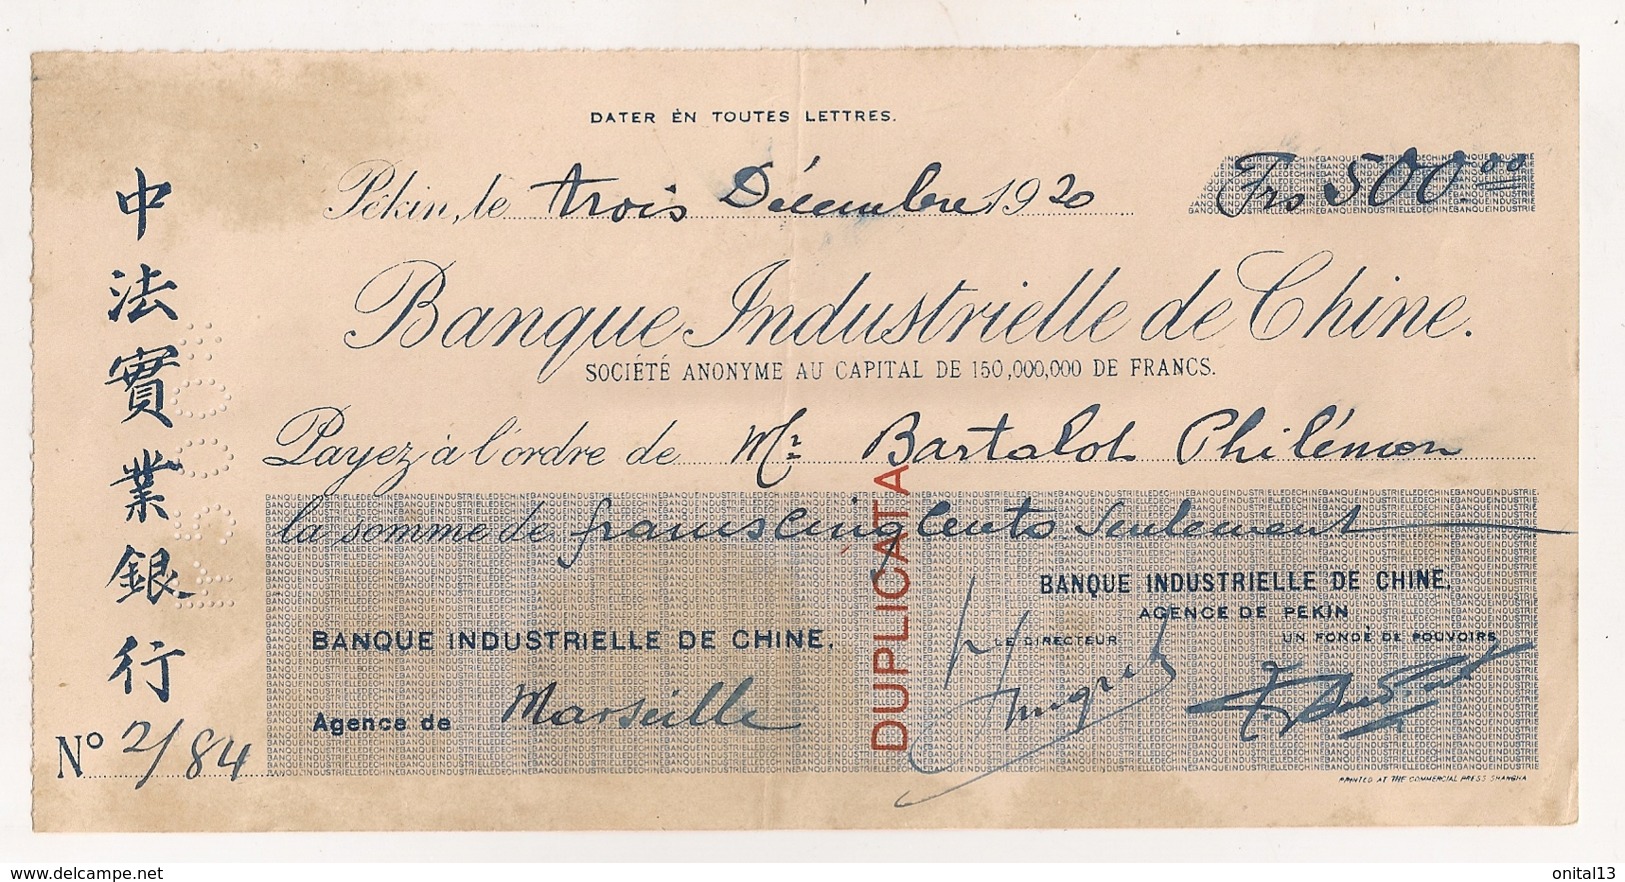 1920 CHEQUE / BANQUE INDUSTRIELLE DE CHINE   / AGENCE DE MARSEILLE  FAIT A PEKIN   E12 - Chèques & Chèques De Voyage